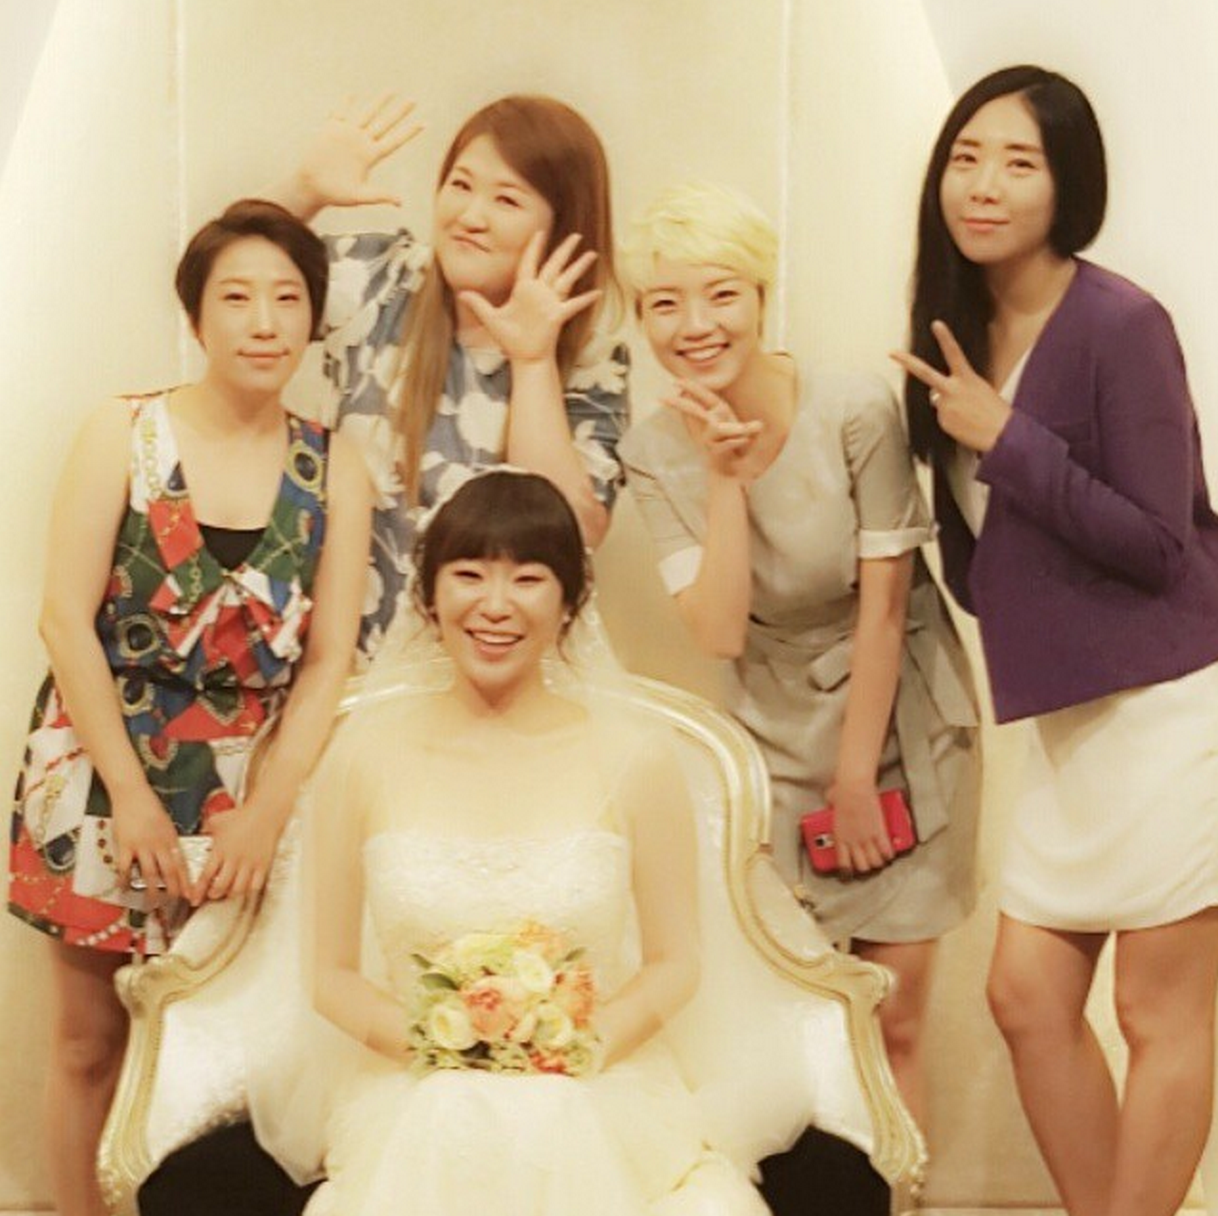 lee-gook-joo-jung-juri-wedding